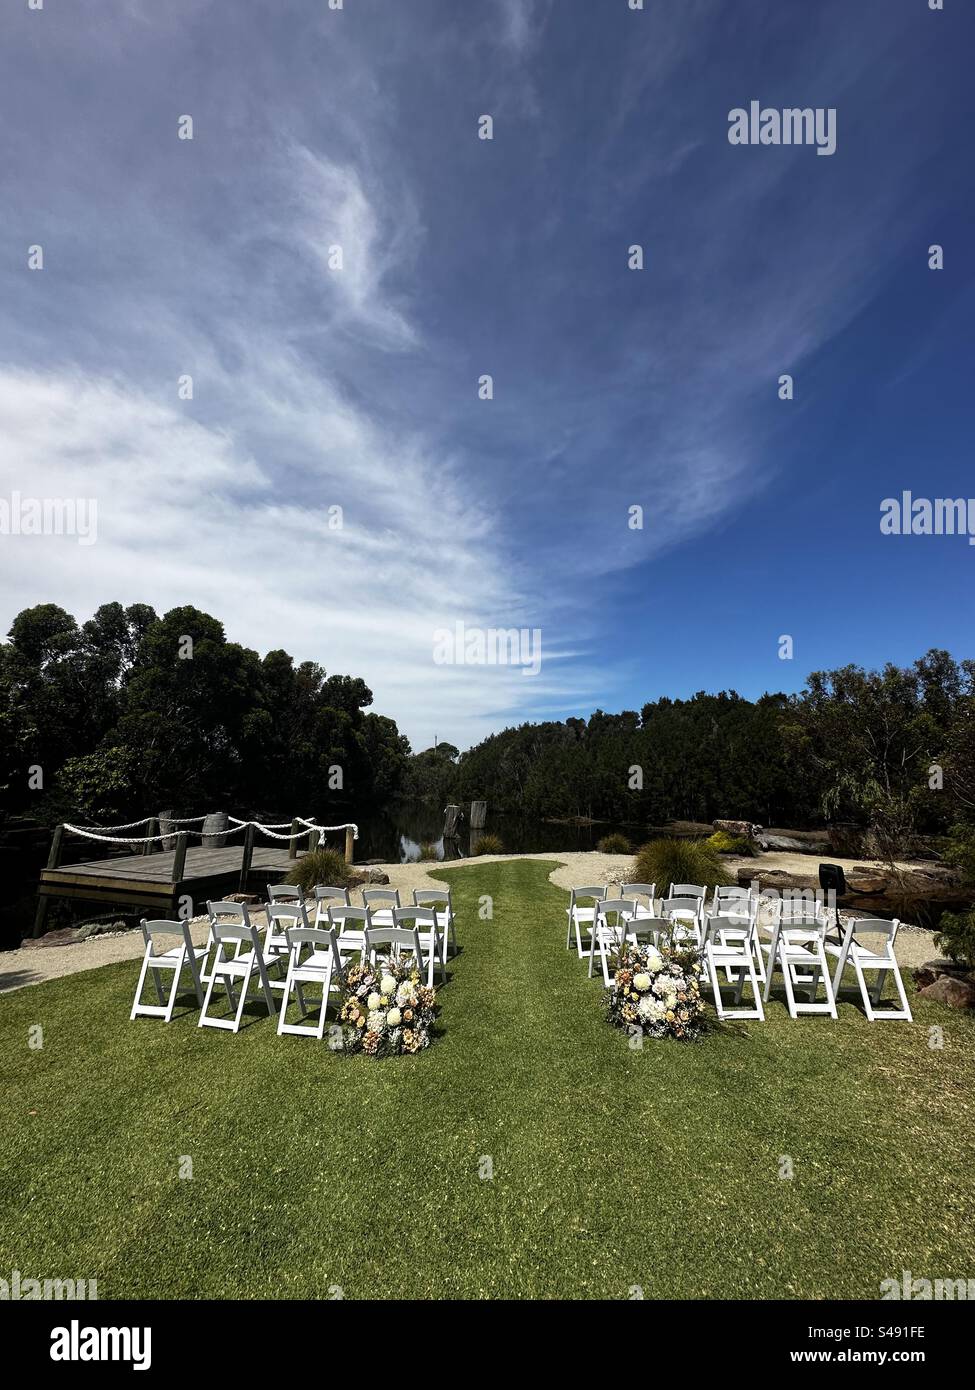 Hochzeitszeremonie am Fluss unter blauem Himmel. Hochzeitsblumen und Stühle für Gäste bereit für die Hochzeitszeremonie. Stockfoto